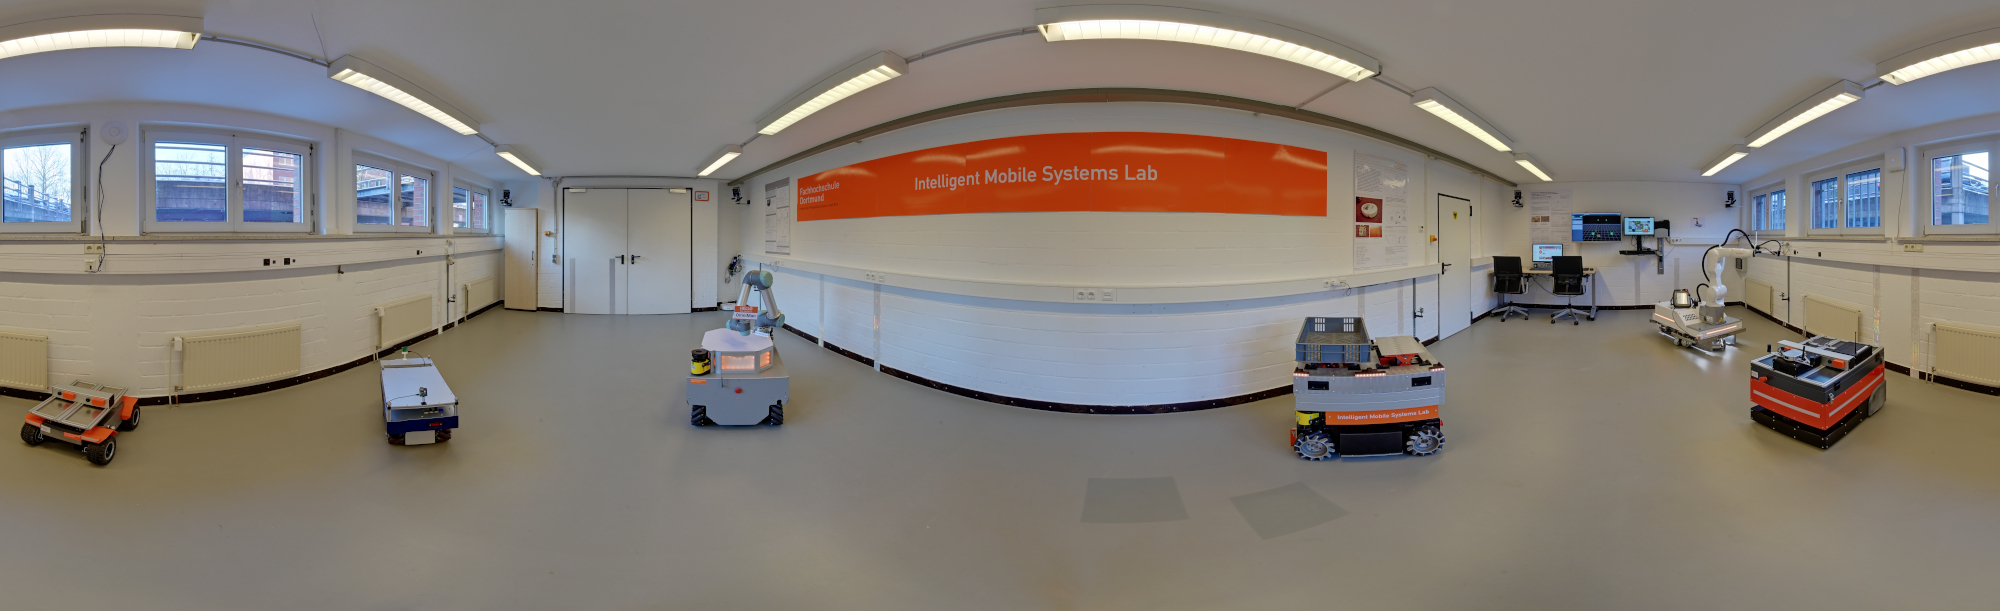 Panorama von der Roboter-Fahrfläche des IMSL